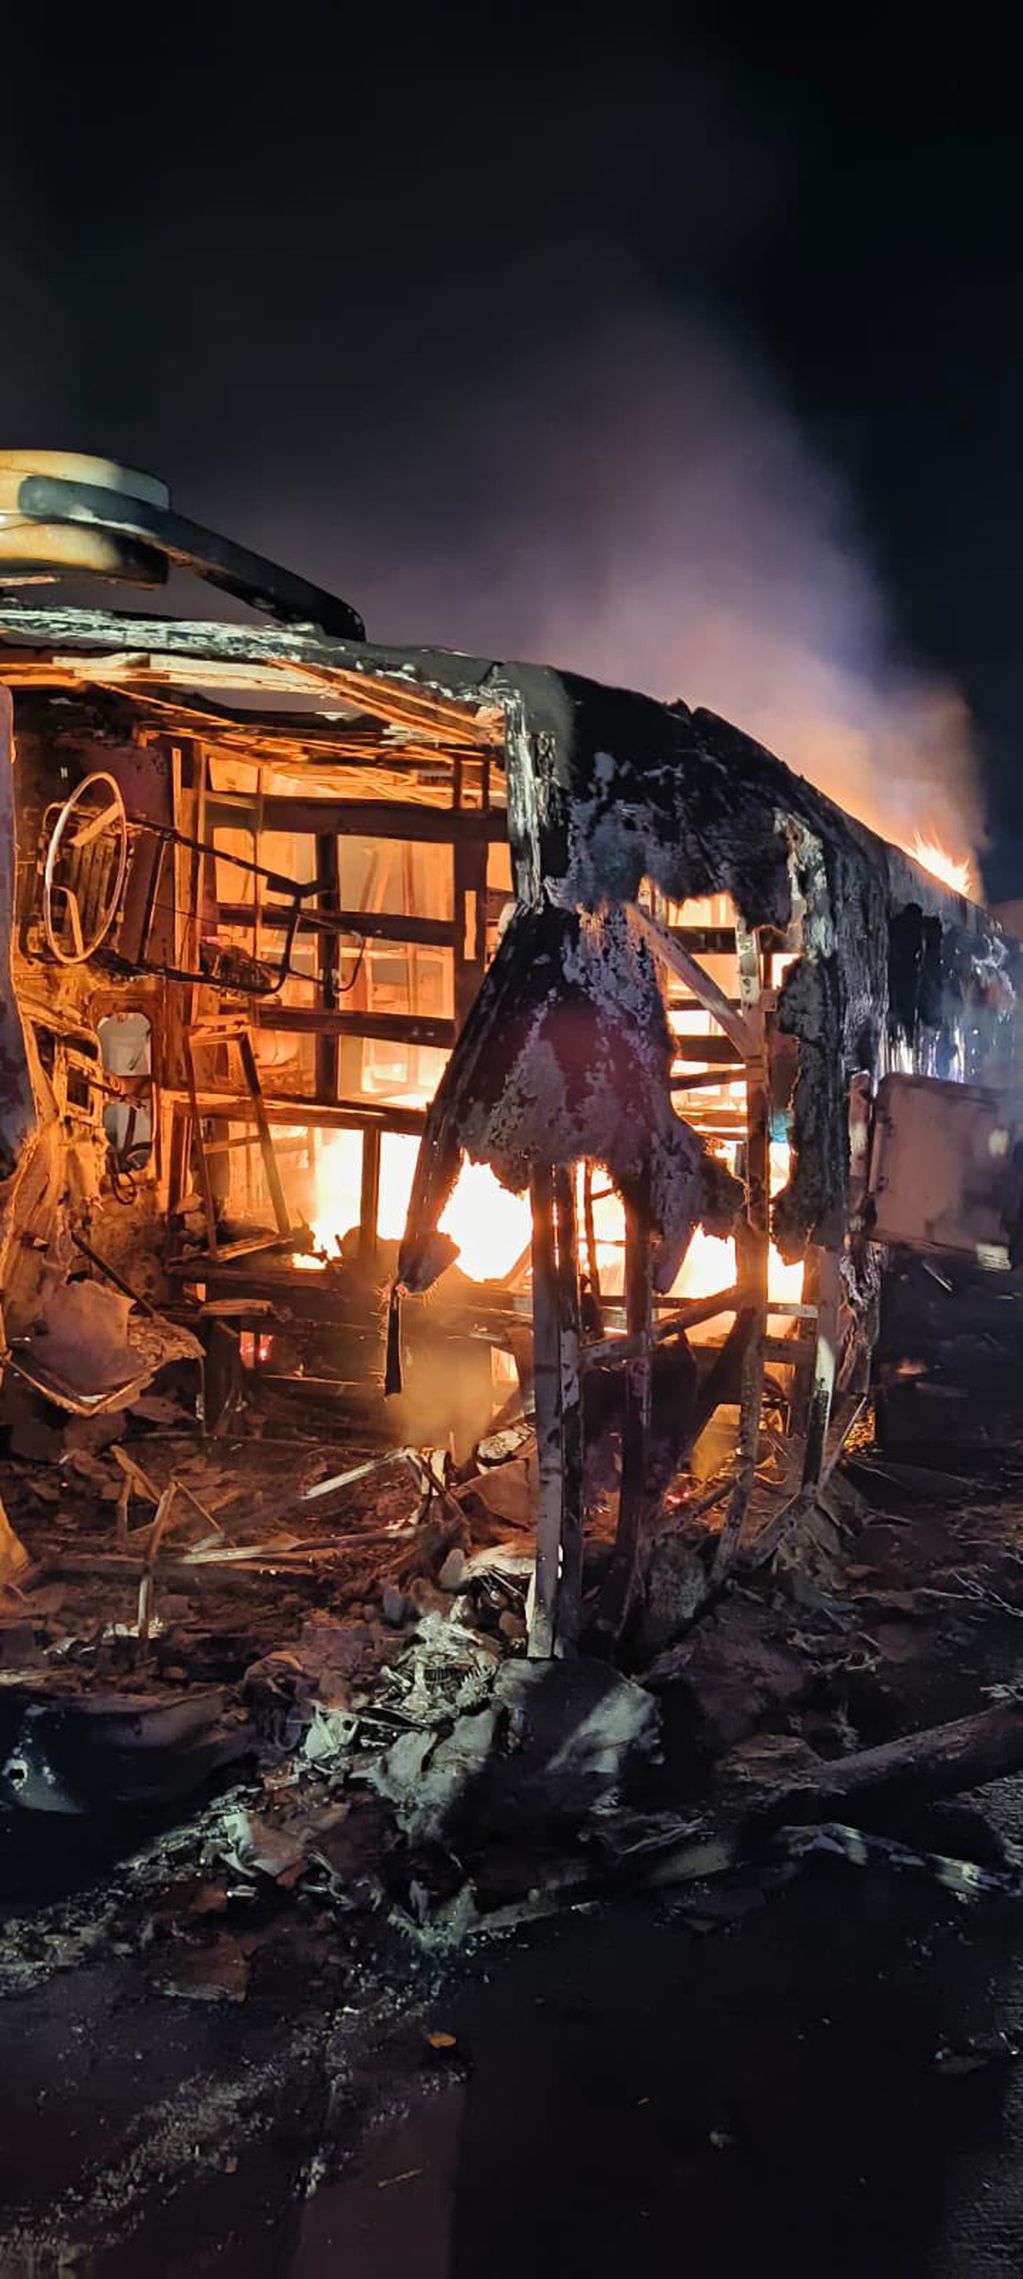 El incendio de un autobús en la India dejó 25 muertos